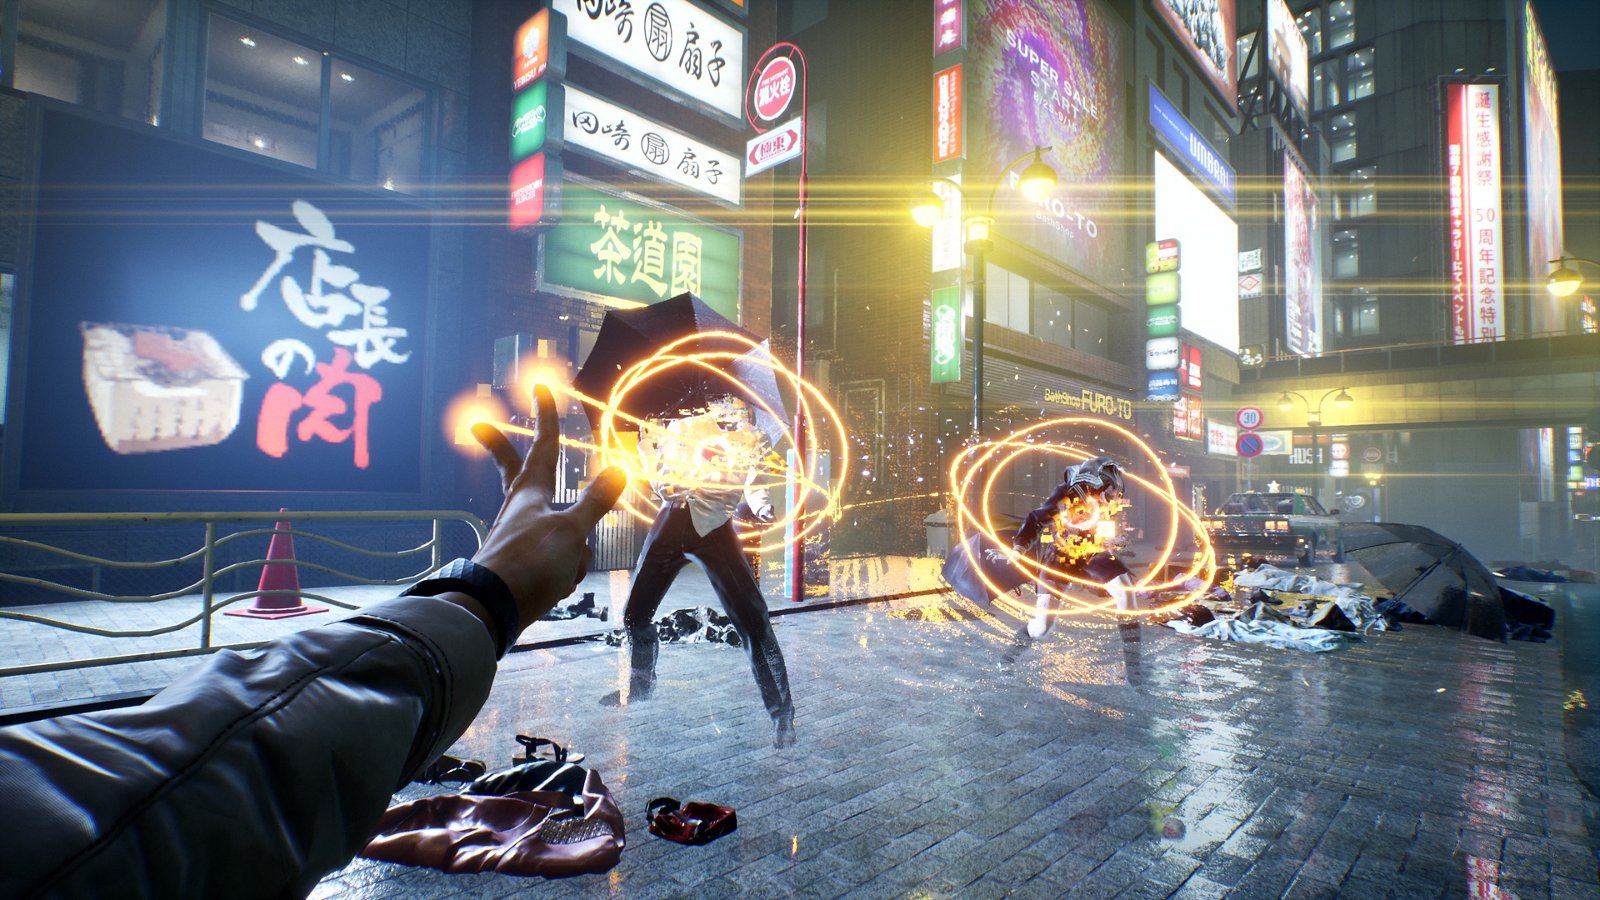 Ghostwire: Tokyo (PC/PS5) – um guia do outro mundo para conquistar